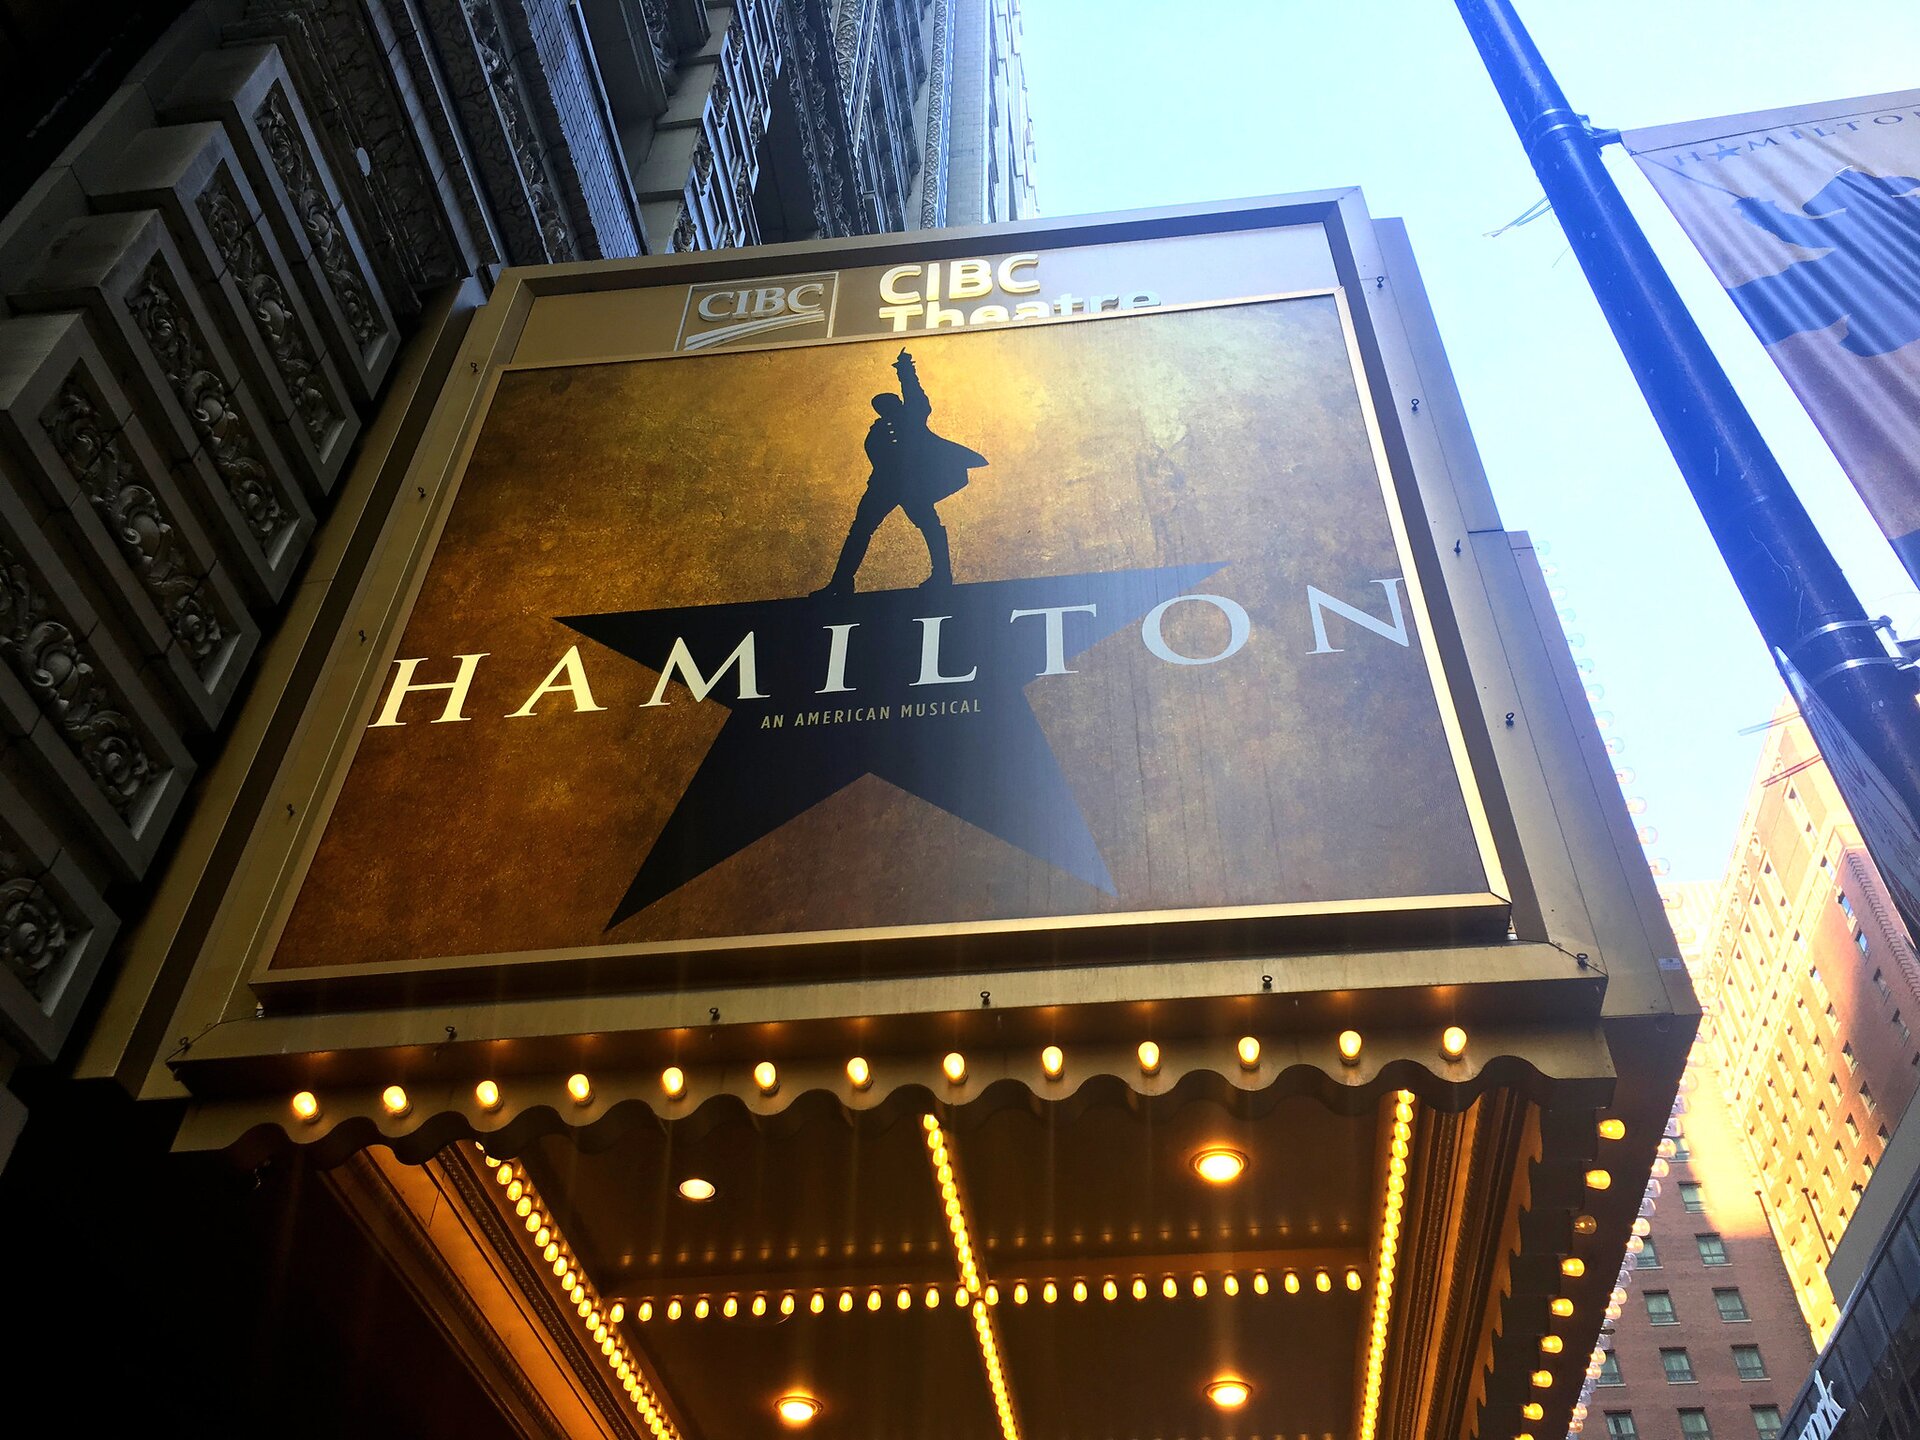 Zdjęcie przedstawia podświetloną reklamę wydarzenia zawieszoną na budynku. Na reklamie na pozłacanym tle czarna pięcioramienna gwiazda, której górne ramię to człowiek stojący w rozkroku z uniesioną do góry ręką. Poniżej napis: Hamilton an American Musical. Na górze reklamy napis: CIBC Theatre.